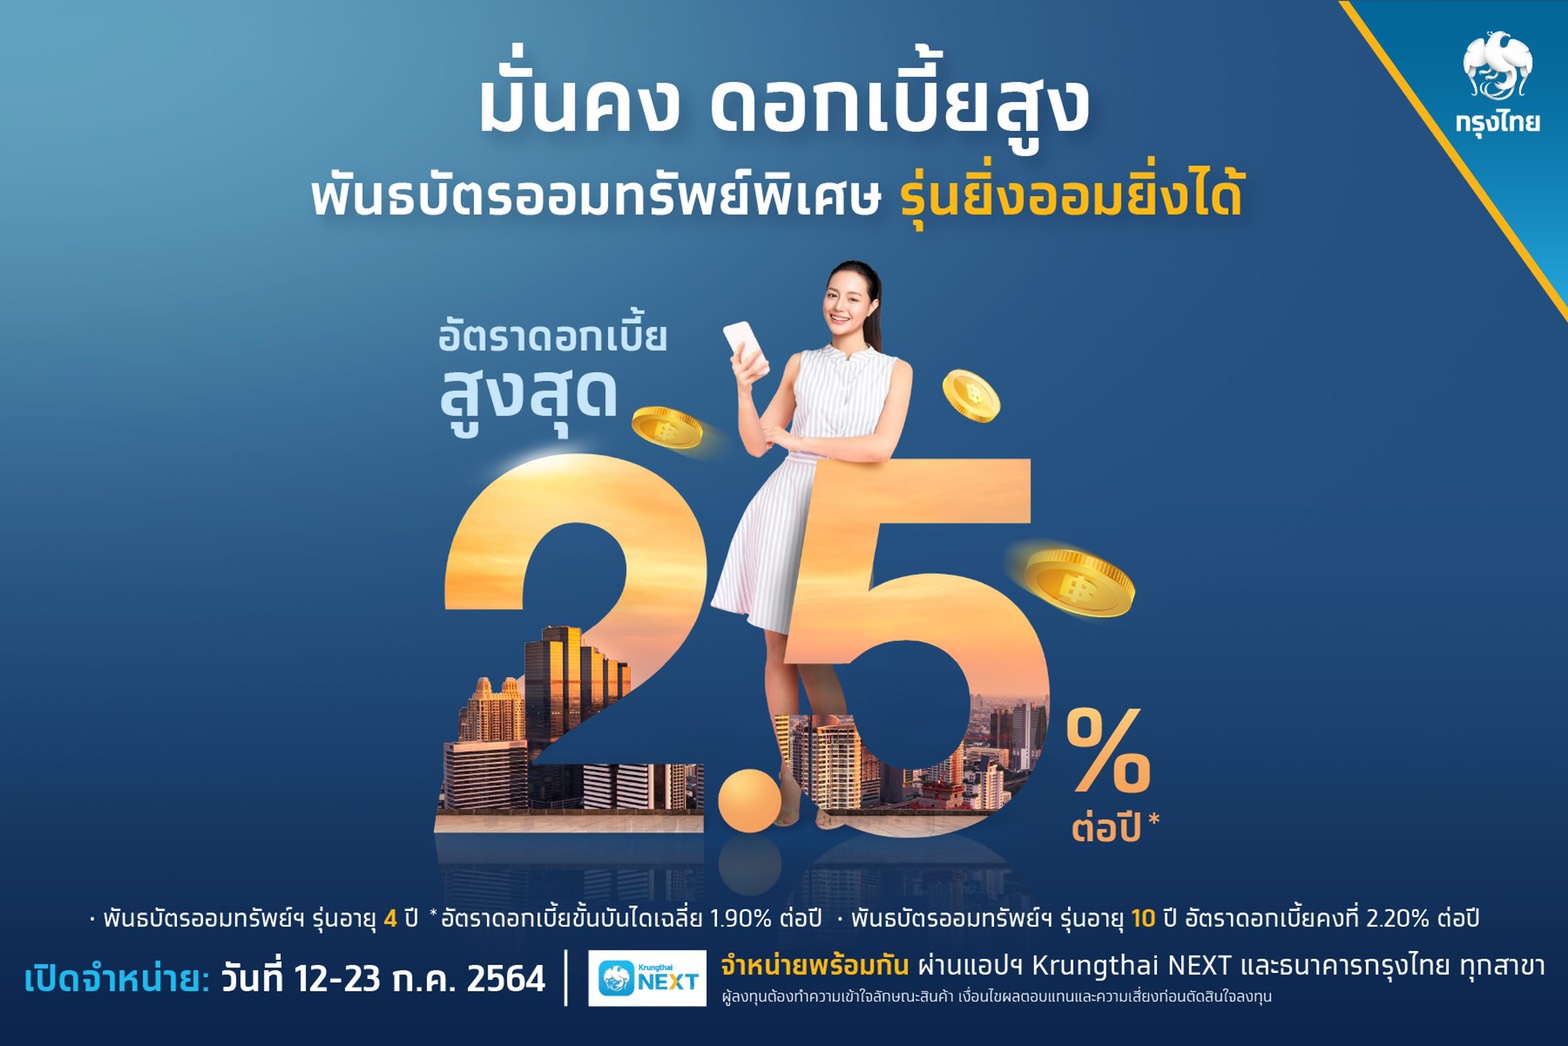 “กรุงไทย” เปิดขายพันธบัตรออมทรัพย์ฯ “ยิ่งออมยิ่งได้” ดอกเบี้ยสูงสุด 2.5% ต่อปี วงเงิน 4 หมื่นล้านบาท